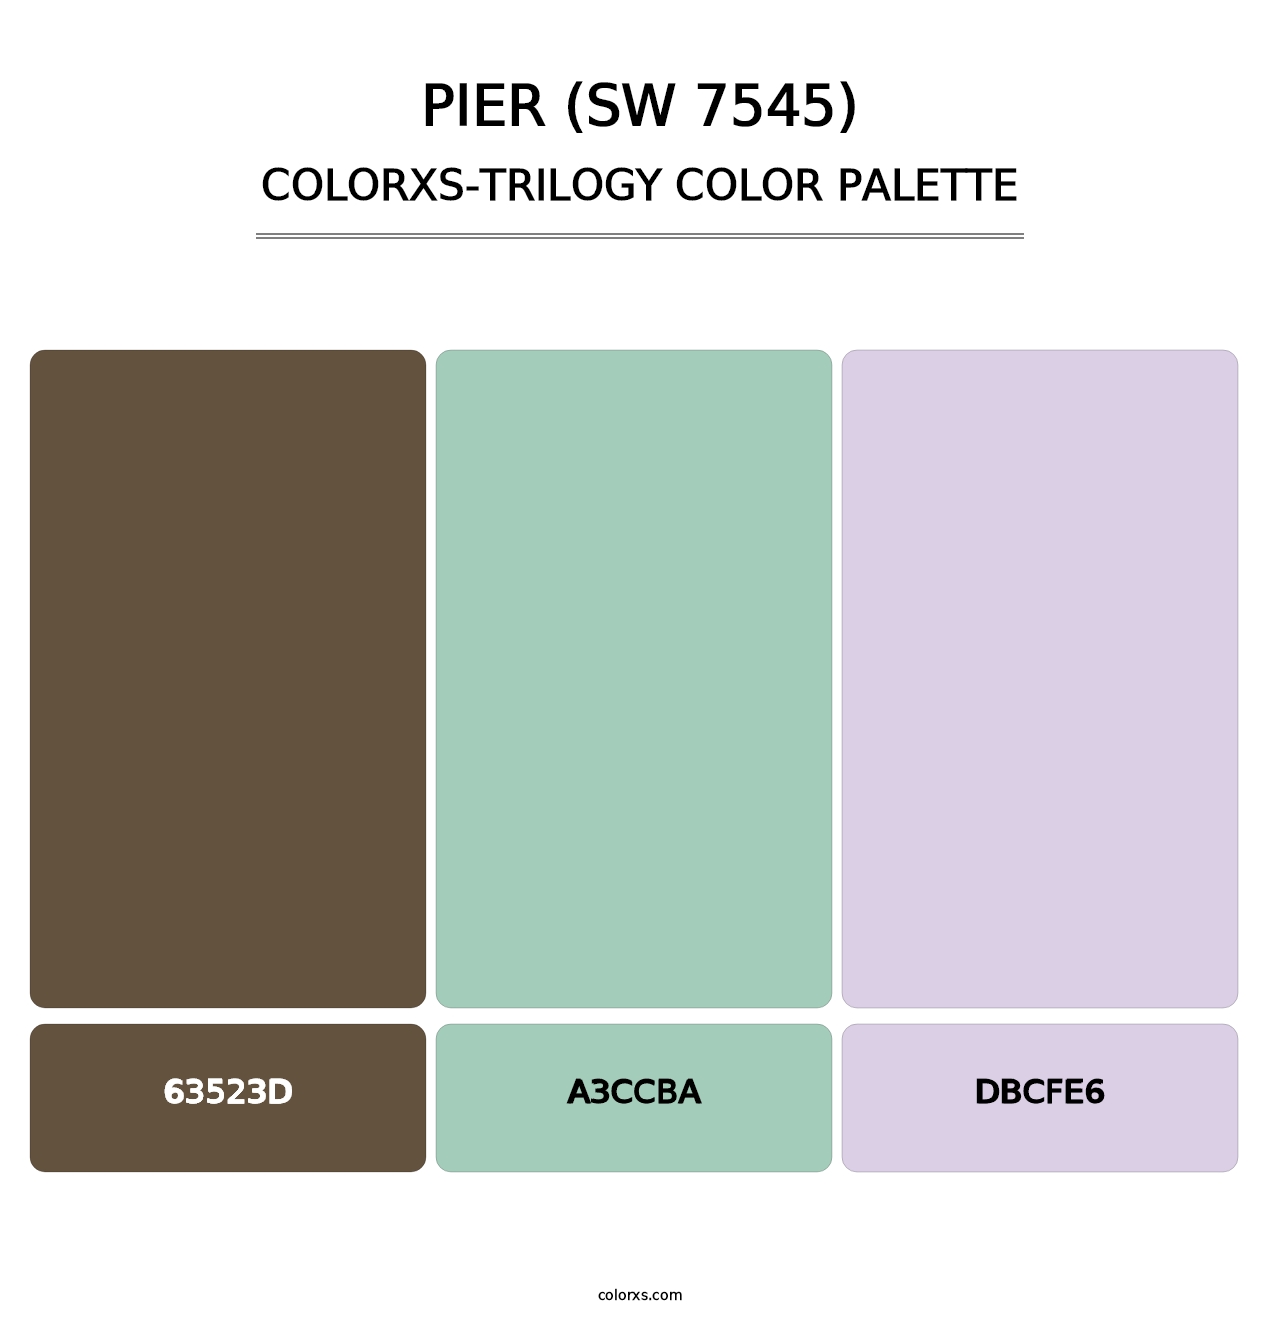 Pier (SW 7545) - Colorxs Trilogy Palette